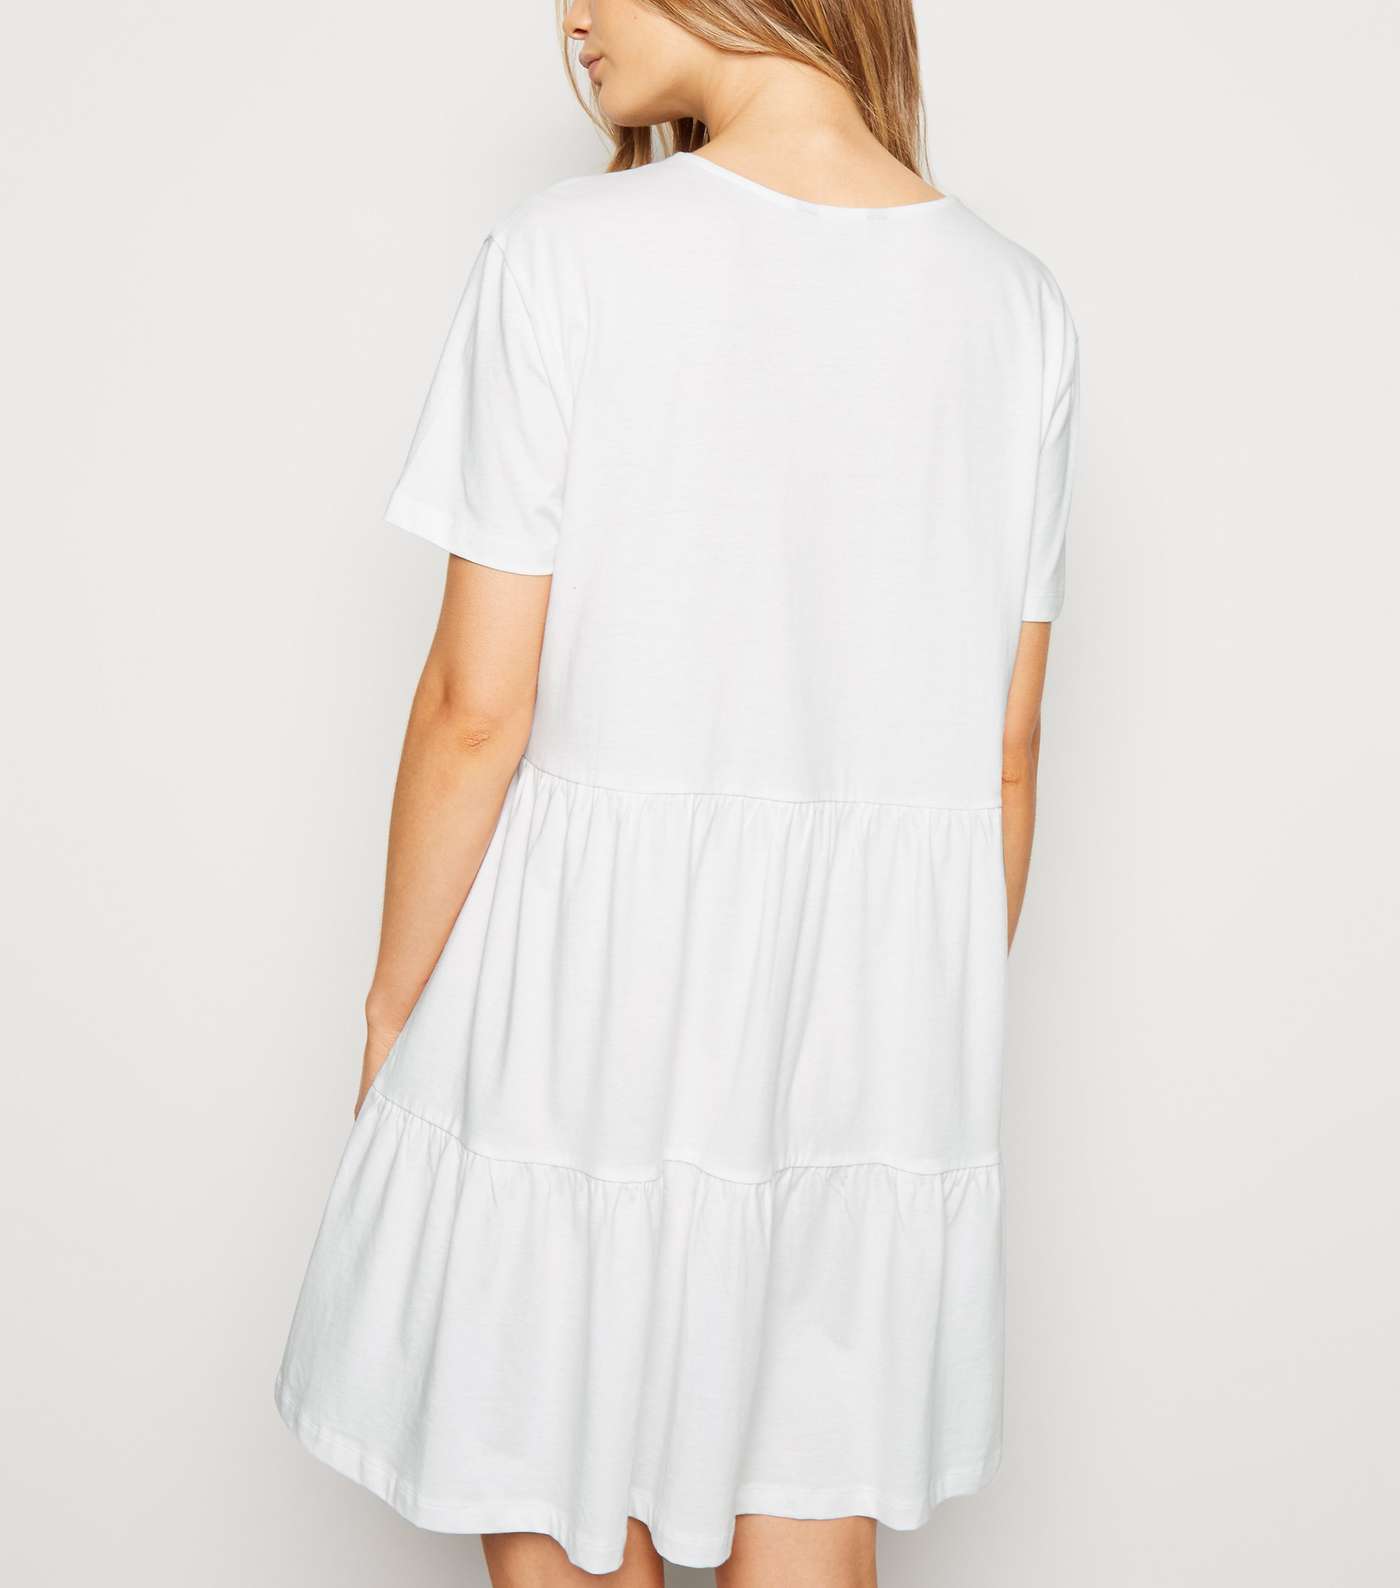 White Short Sleeve Cotton Smock Dress Image 3